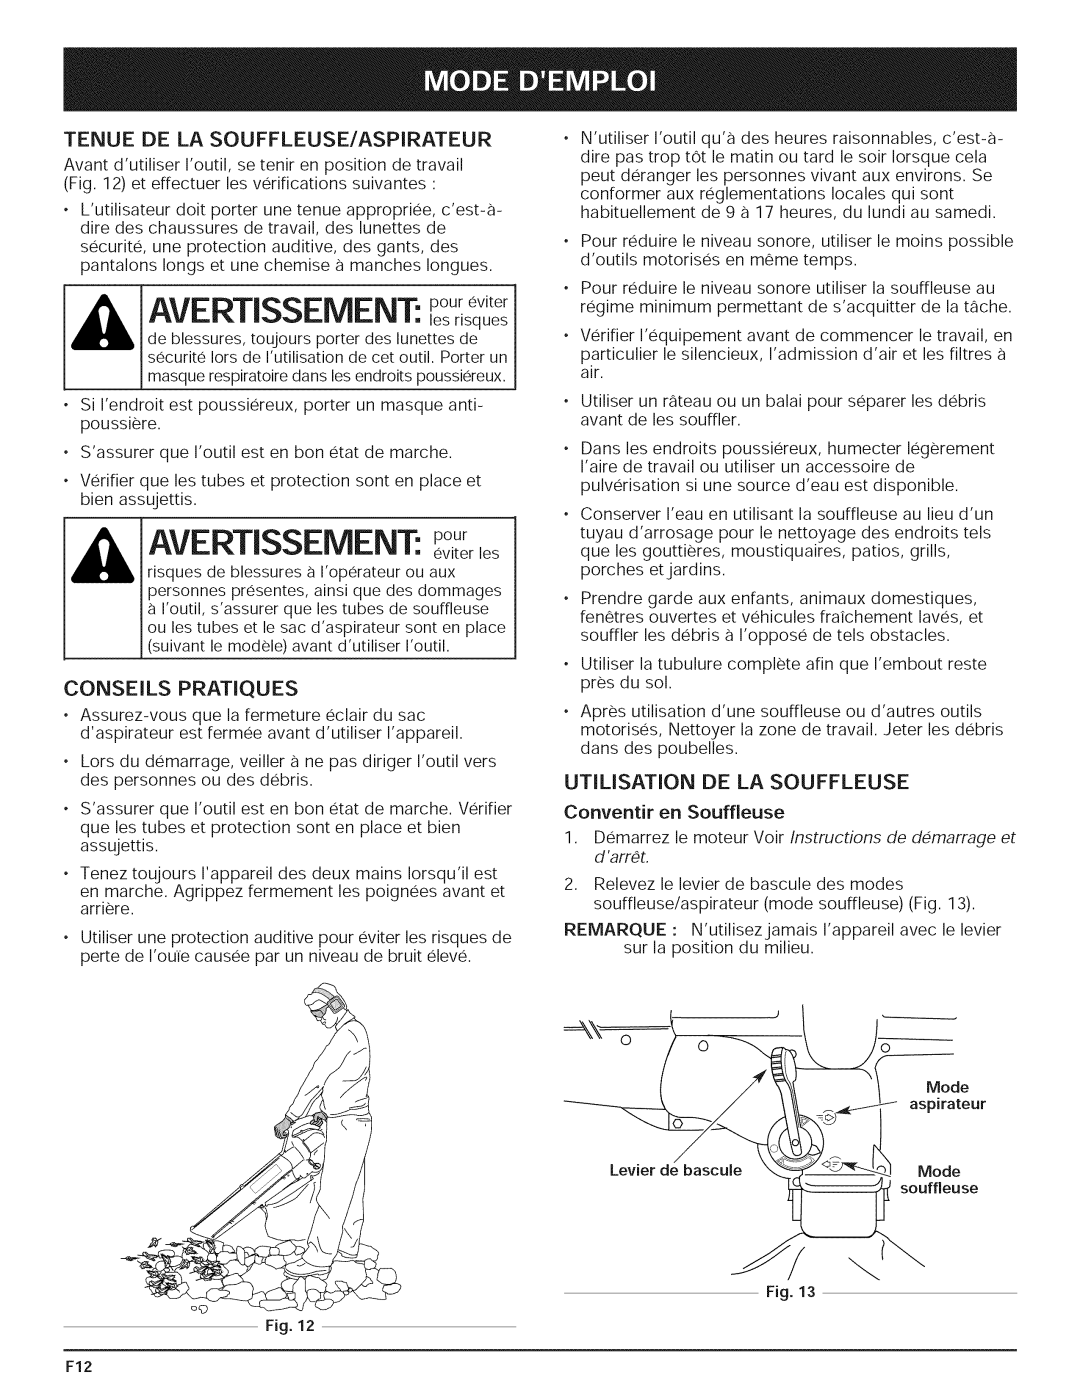 Yard-Man 769.01408 manual AVERTISSEMENT: poureviter, Tenue De La Souffleuse/Aspirateur, Conseils Pratiques 